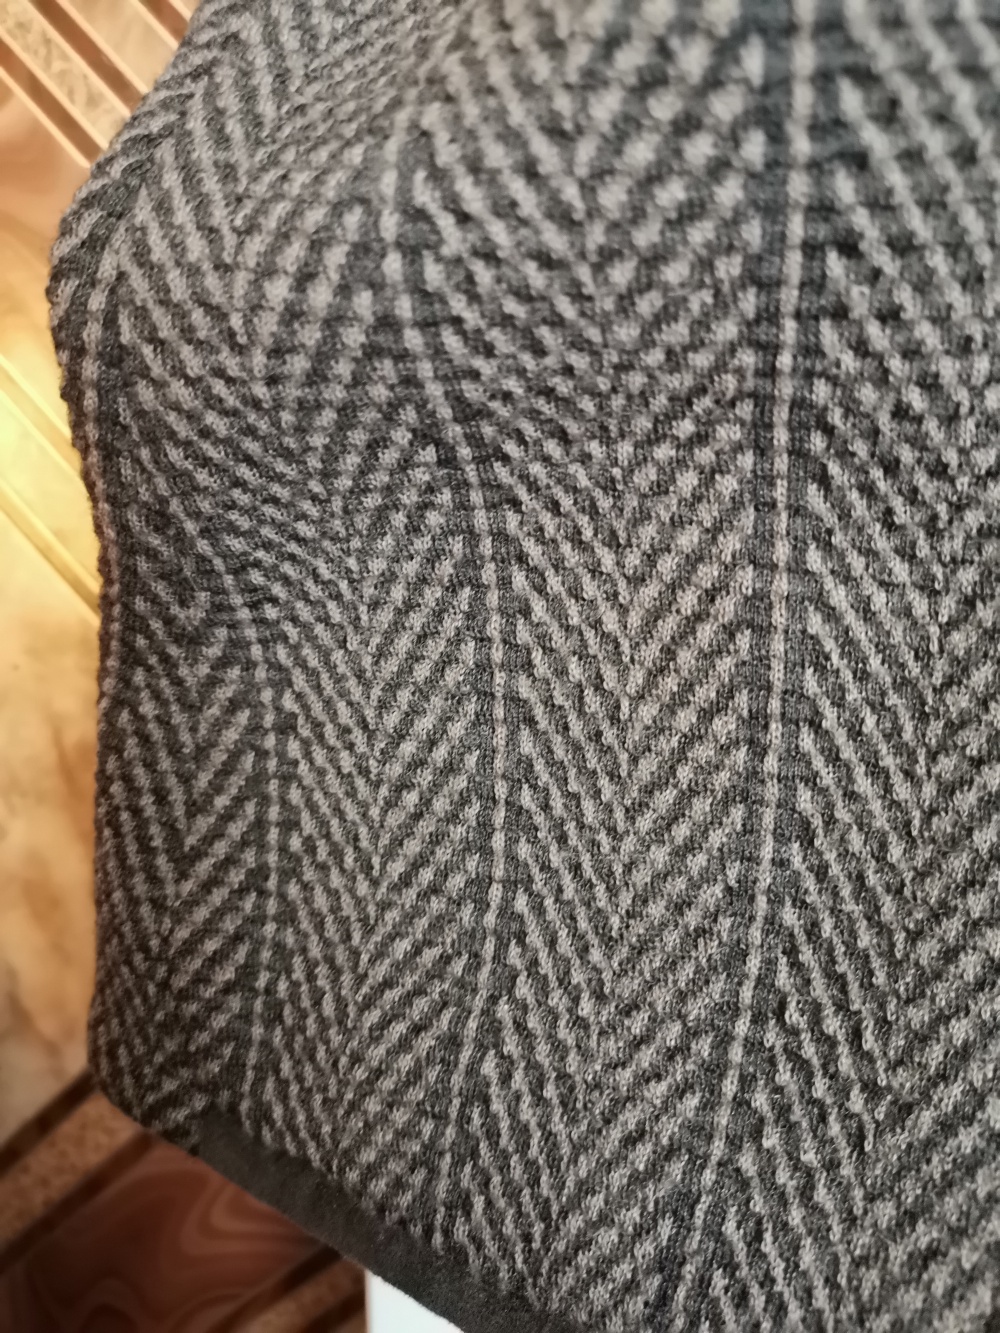 Пиджак Armani, размер 44, 42-44 росс.